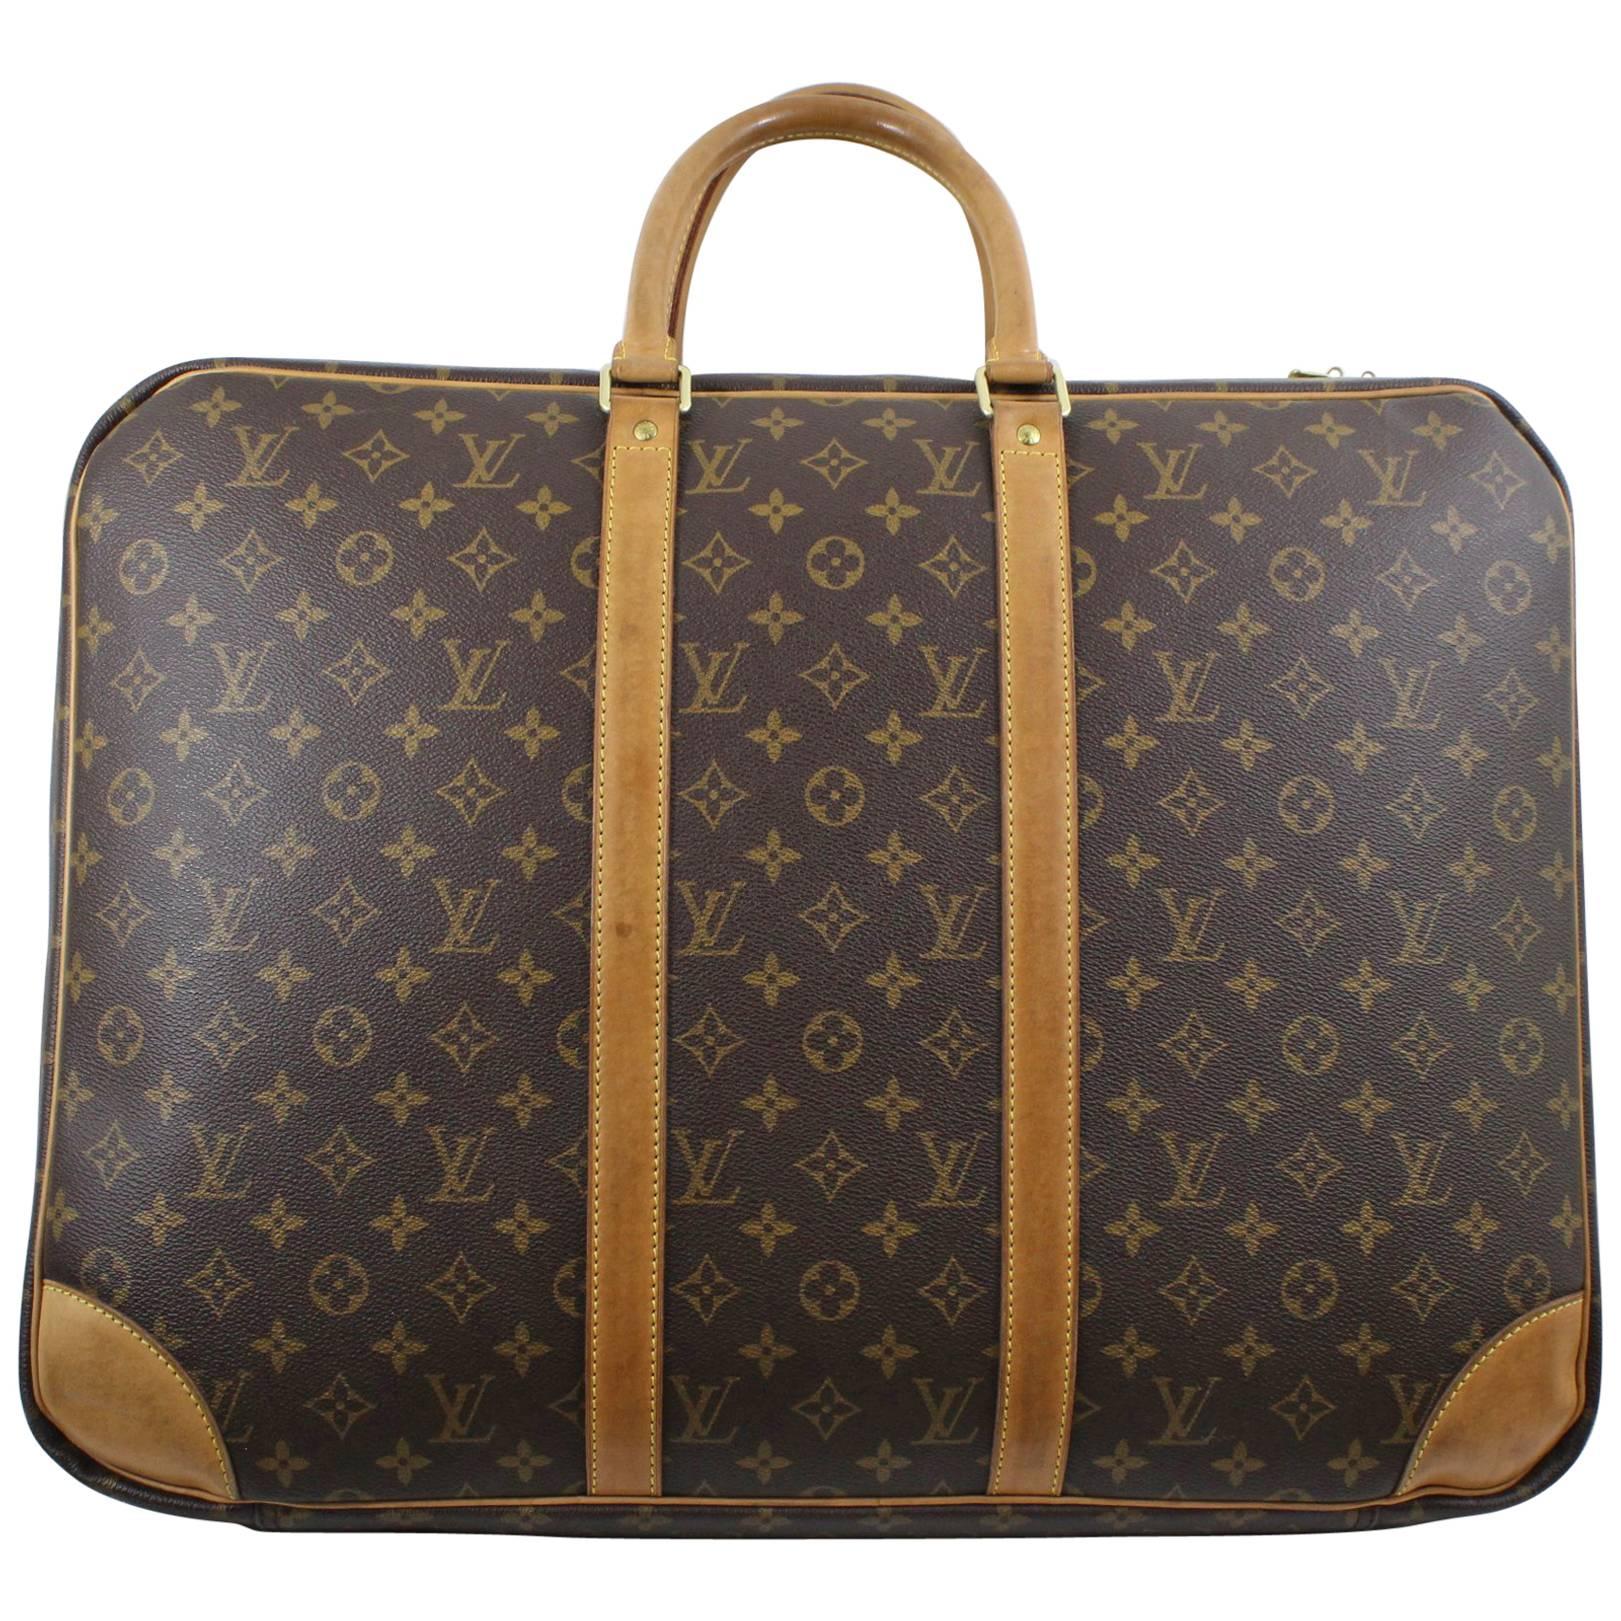 Louis Vuitton Syrius 55 Suitcase